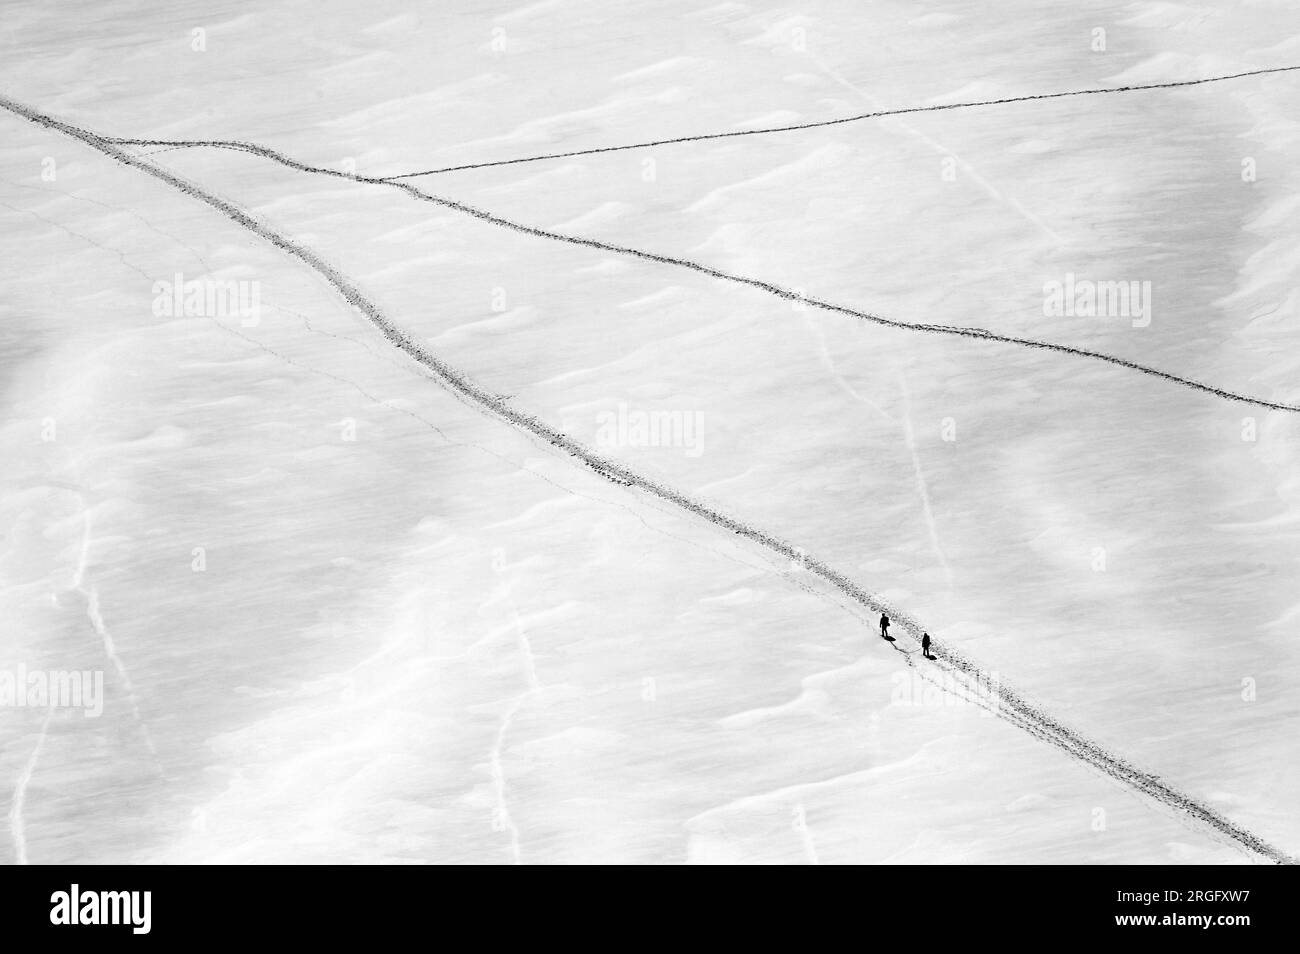 Deux grimpeurs marchant sur le glacier géant près de l'aiguille du midi dans le massif du Mont blanc en noir et blanc Banque D'Images